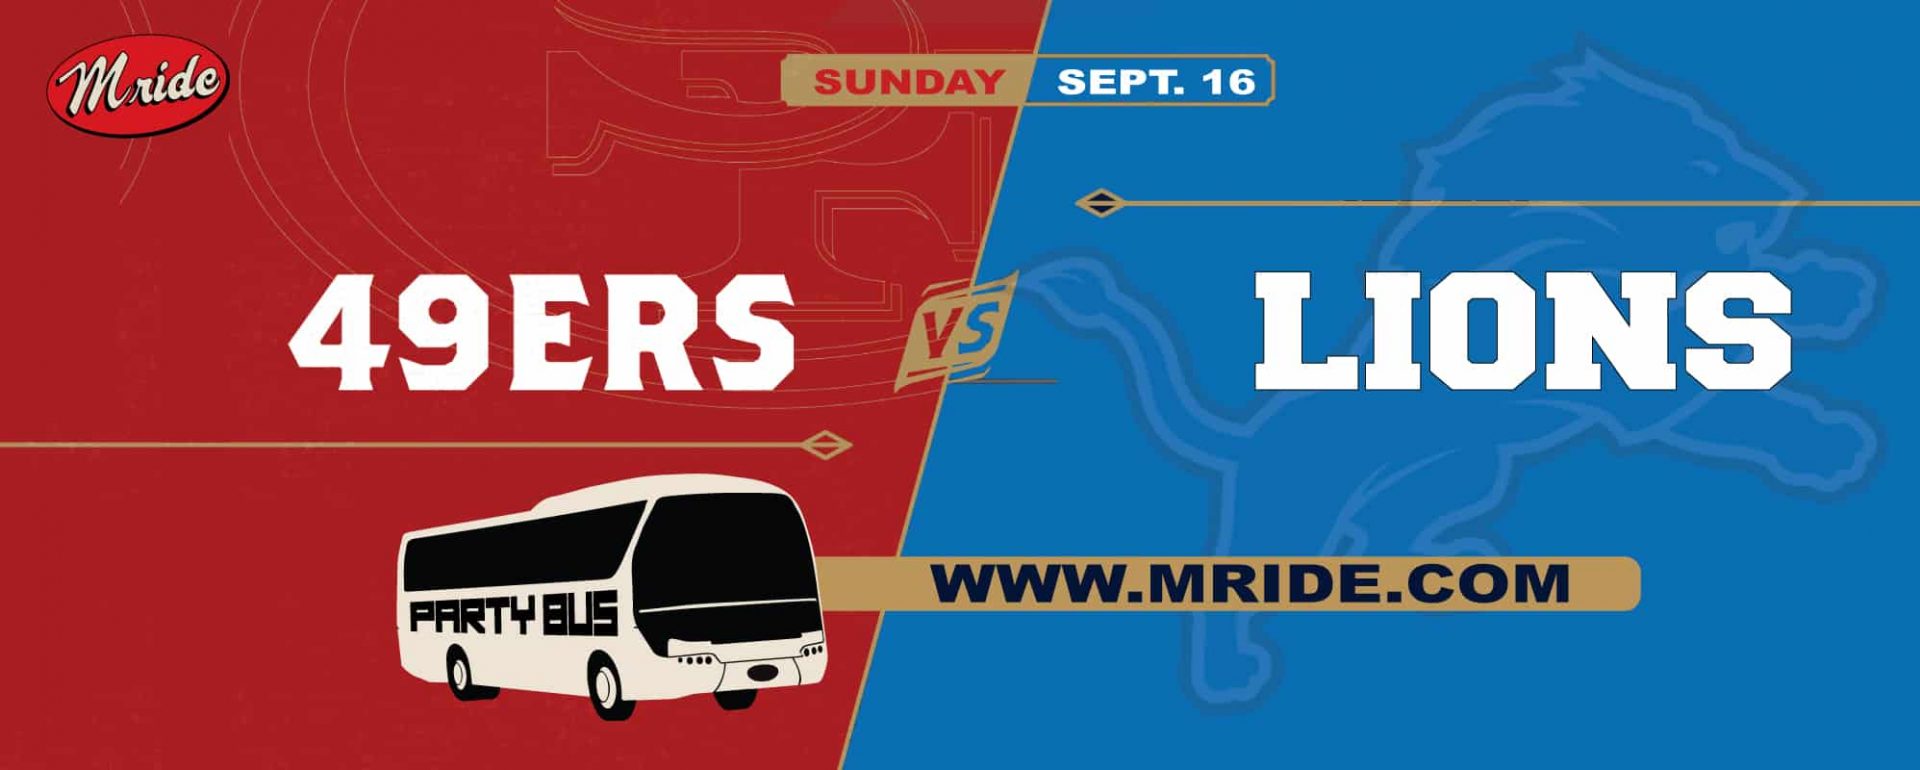 49ers vs. Lions Shuttle Bus